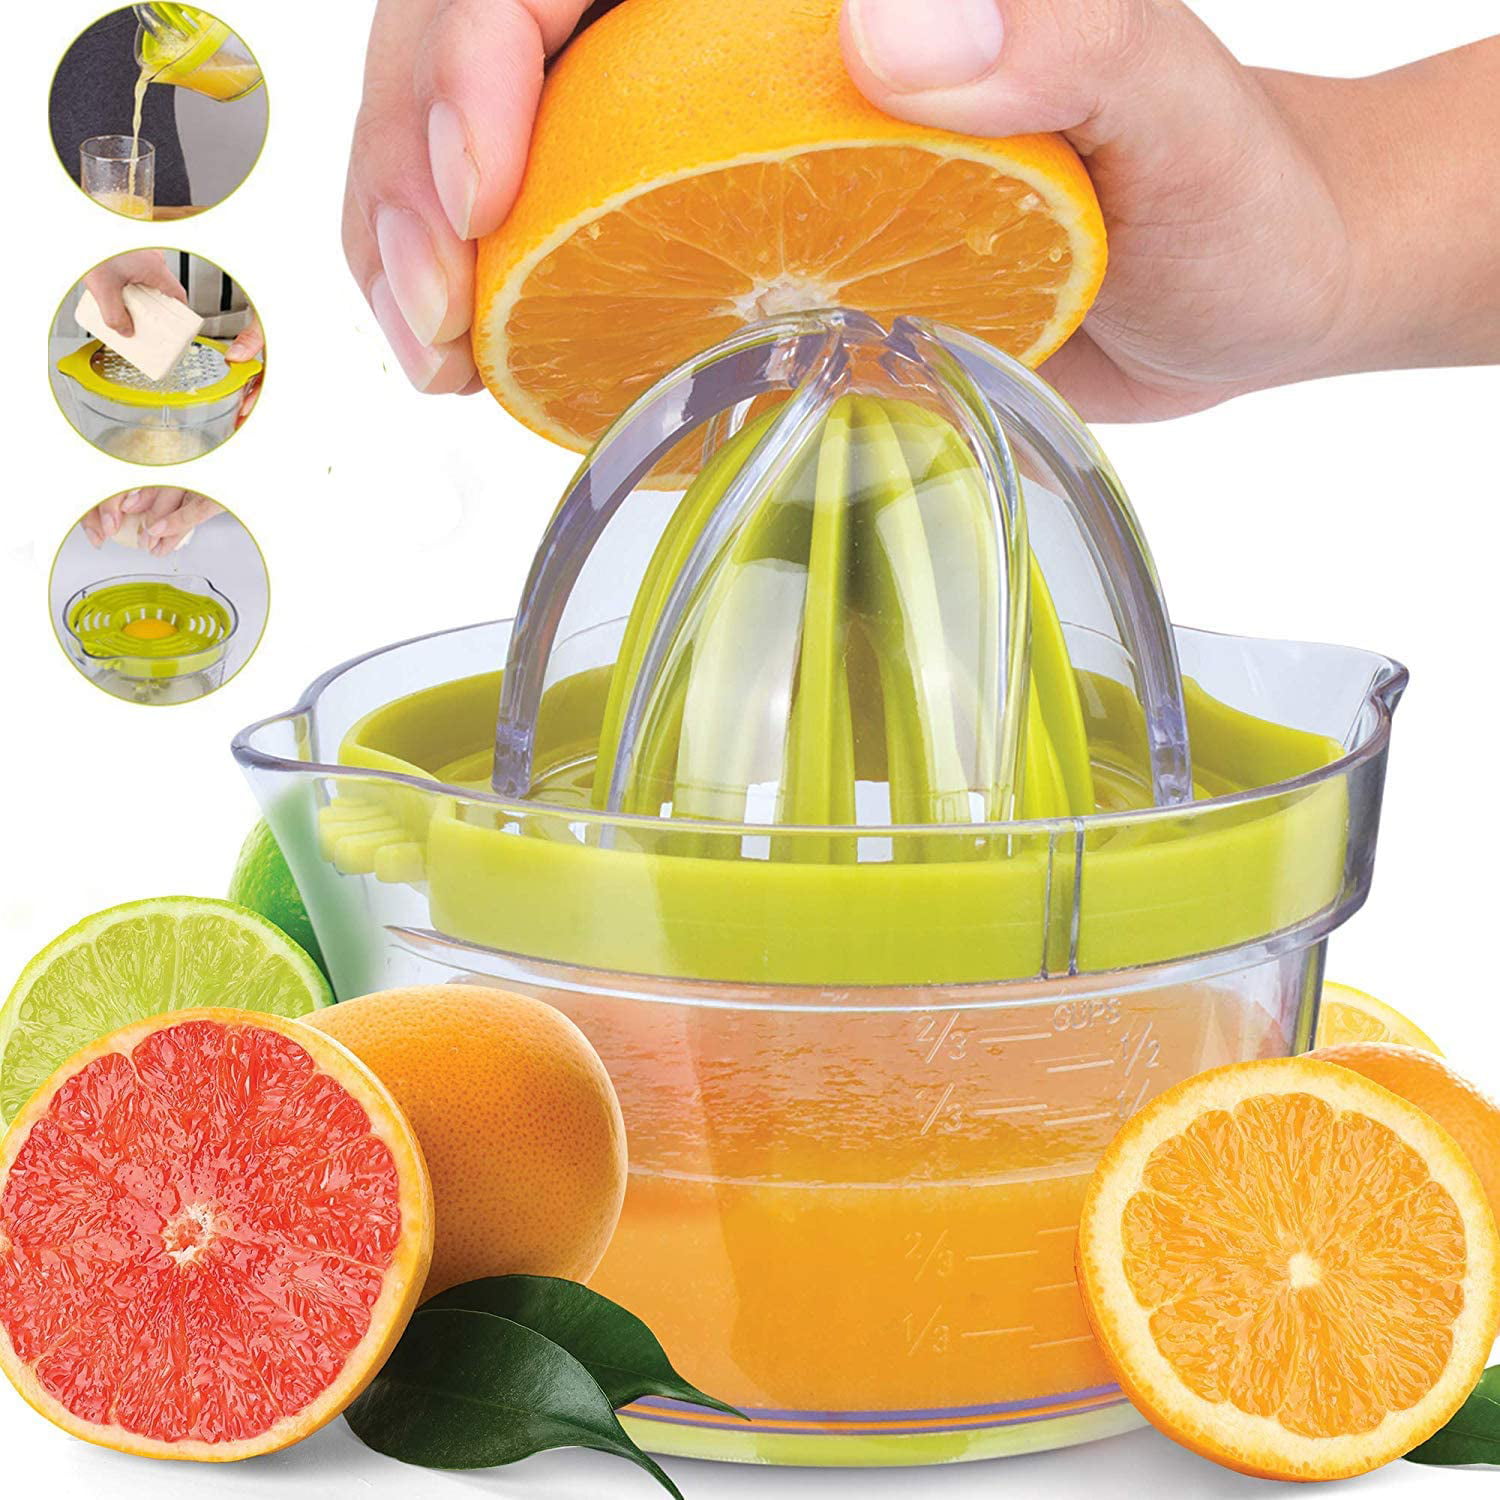 YOSIYO Multifunctional Manual Lemon Squeezer Lemon Squeezer Wooden Fruit Juicer Orange Hand Press Tool Citrus Juice Extractor 